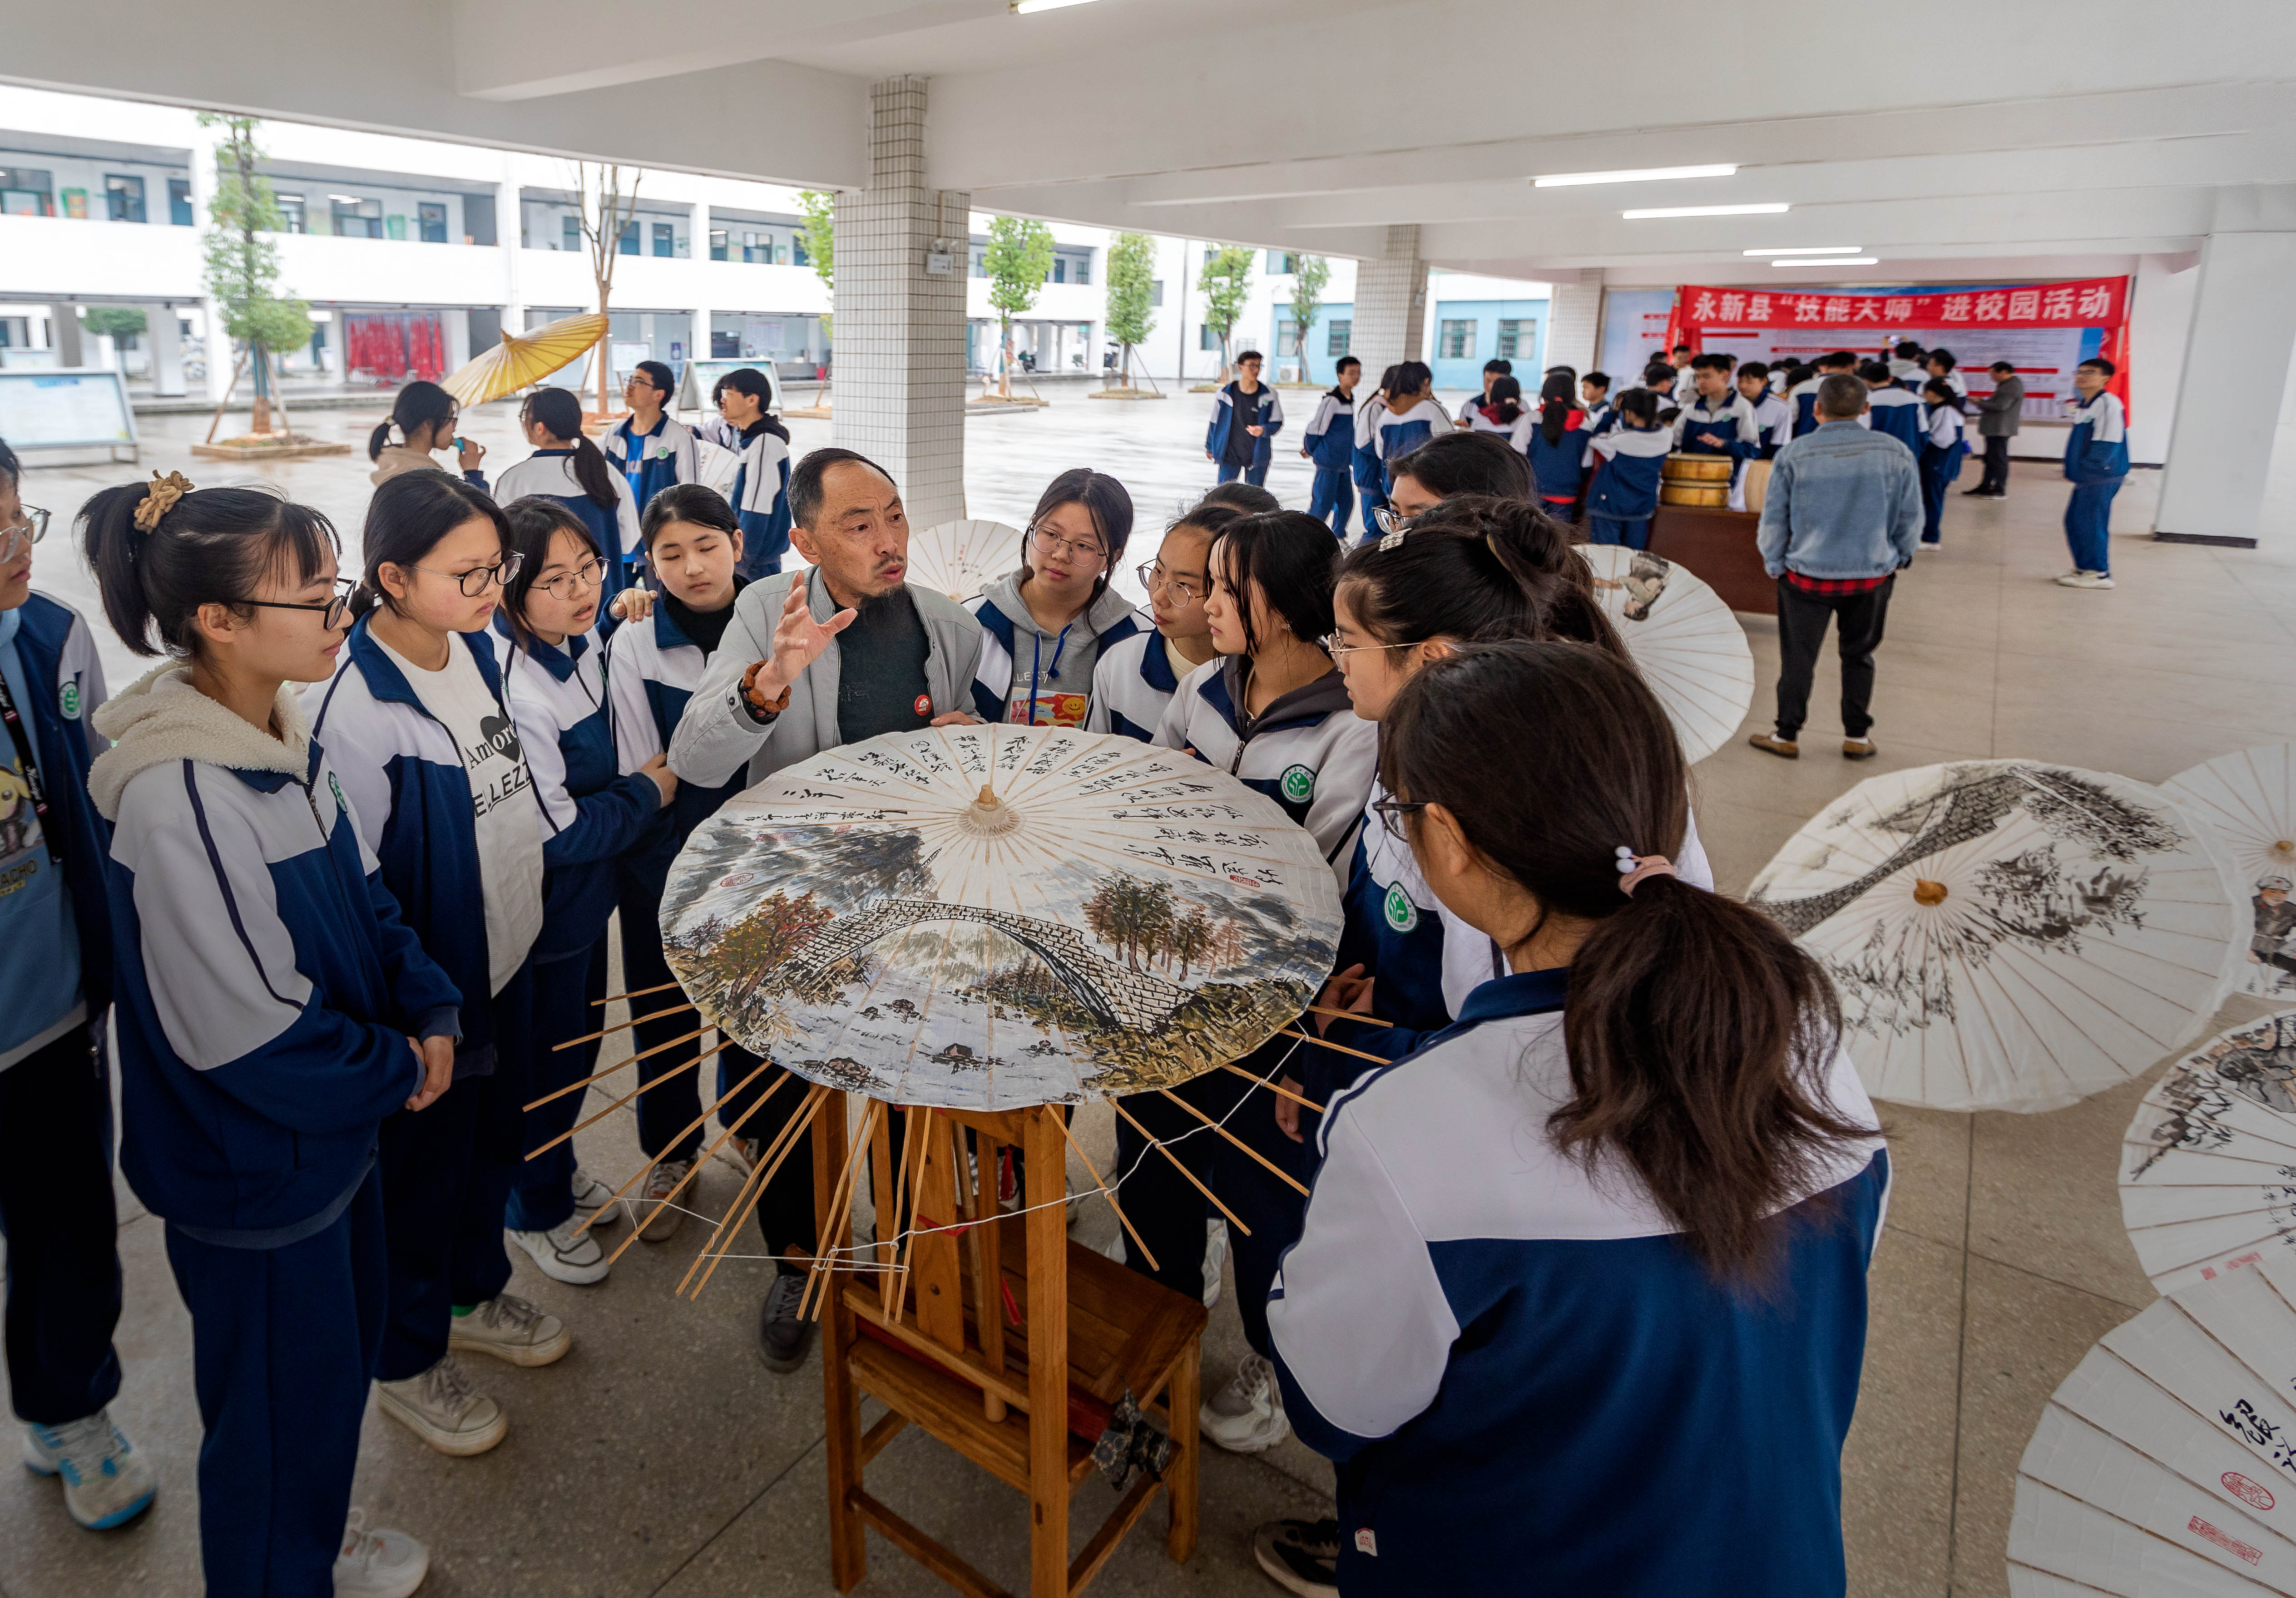 当地油纸伞制作技能大师在向孩子们讲解油纸伞的制作技艺。王惠民摄